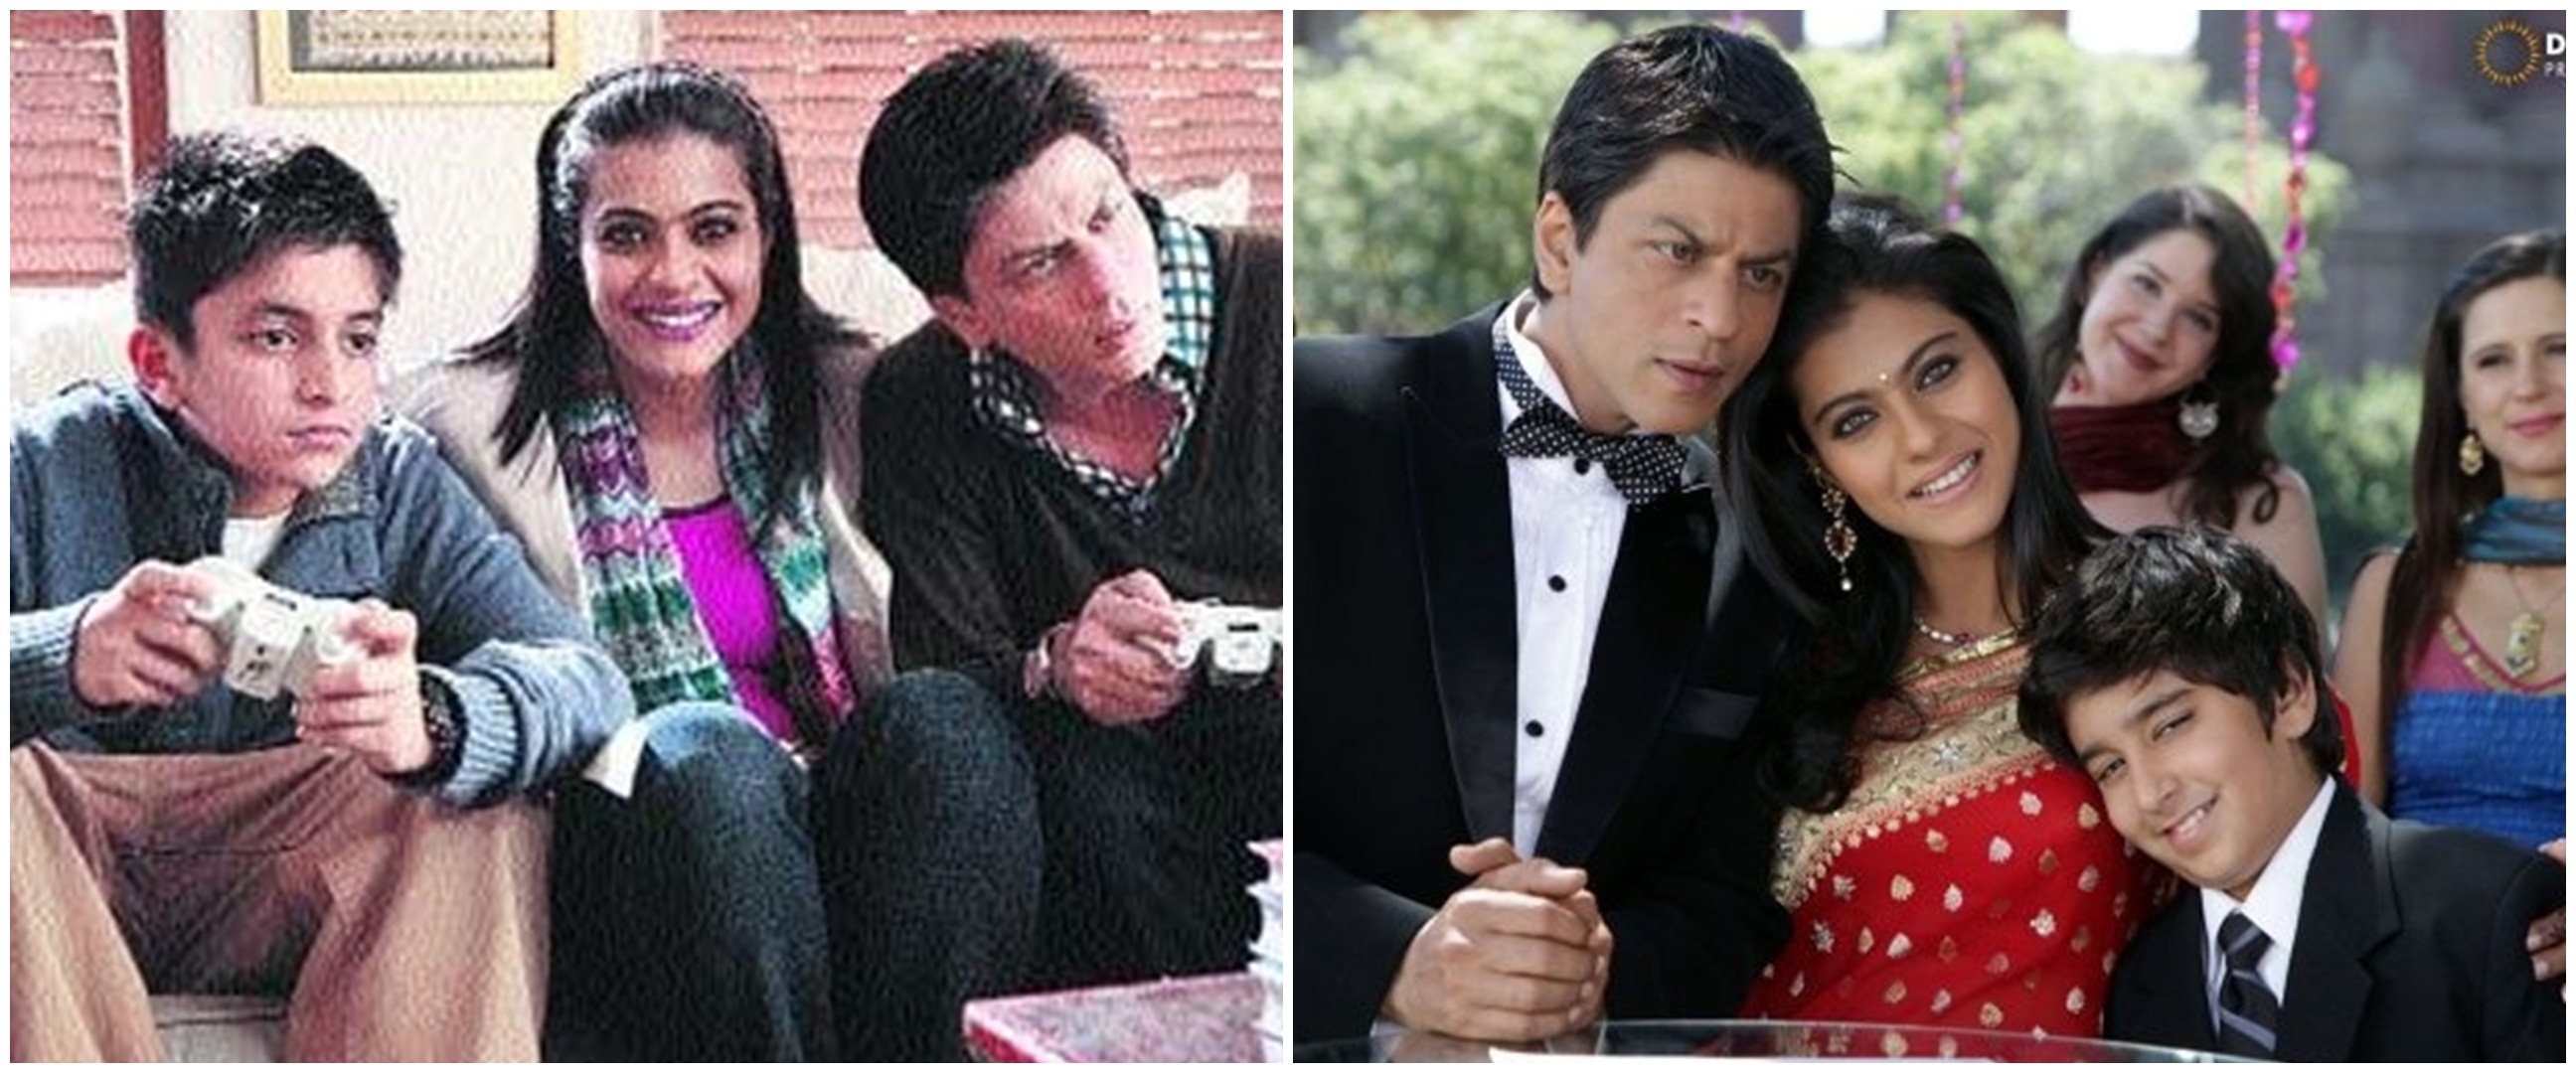 Ingat anak SRK di film 'My Name is Khan'? Ini 8 potret barunya